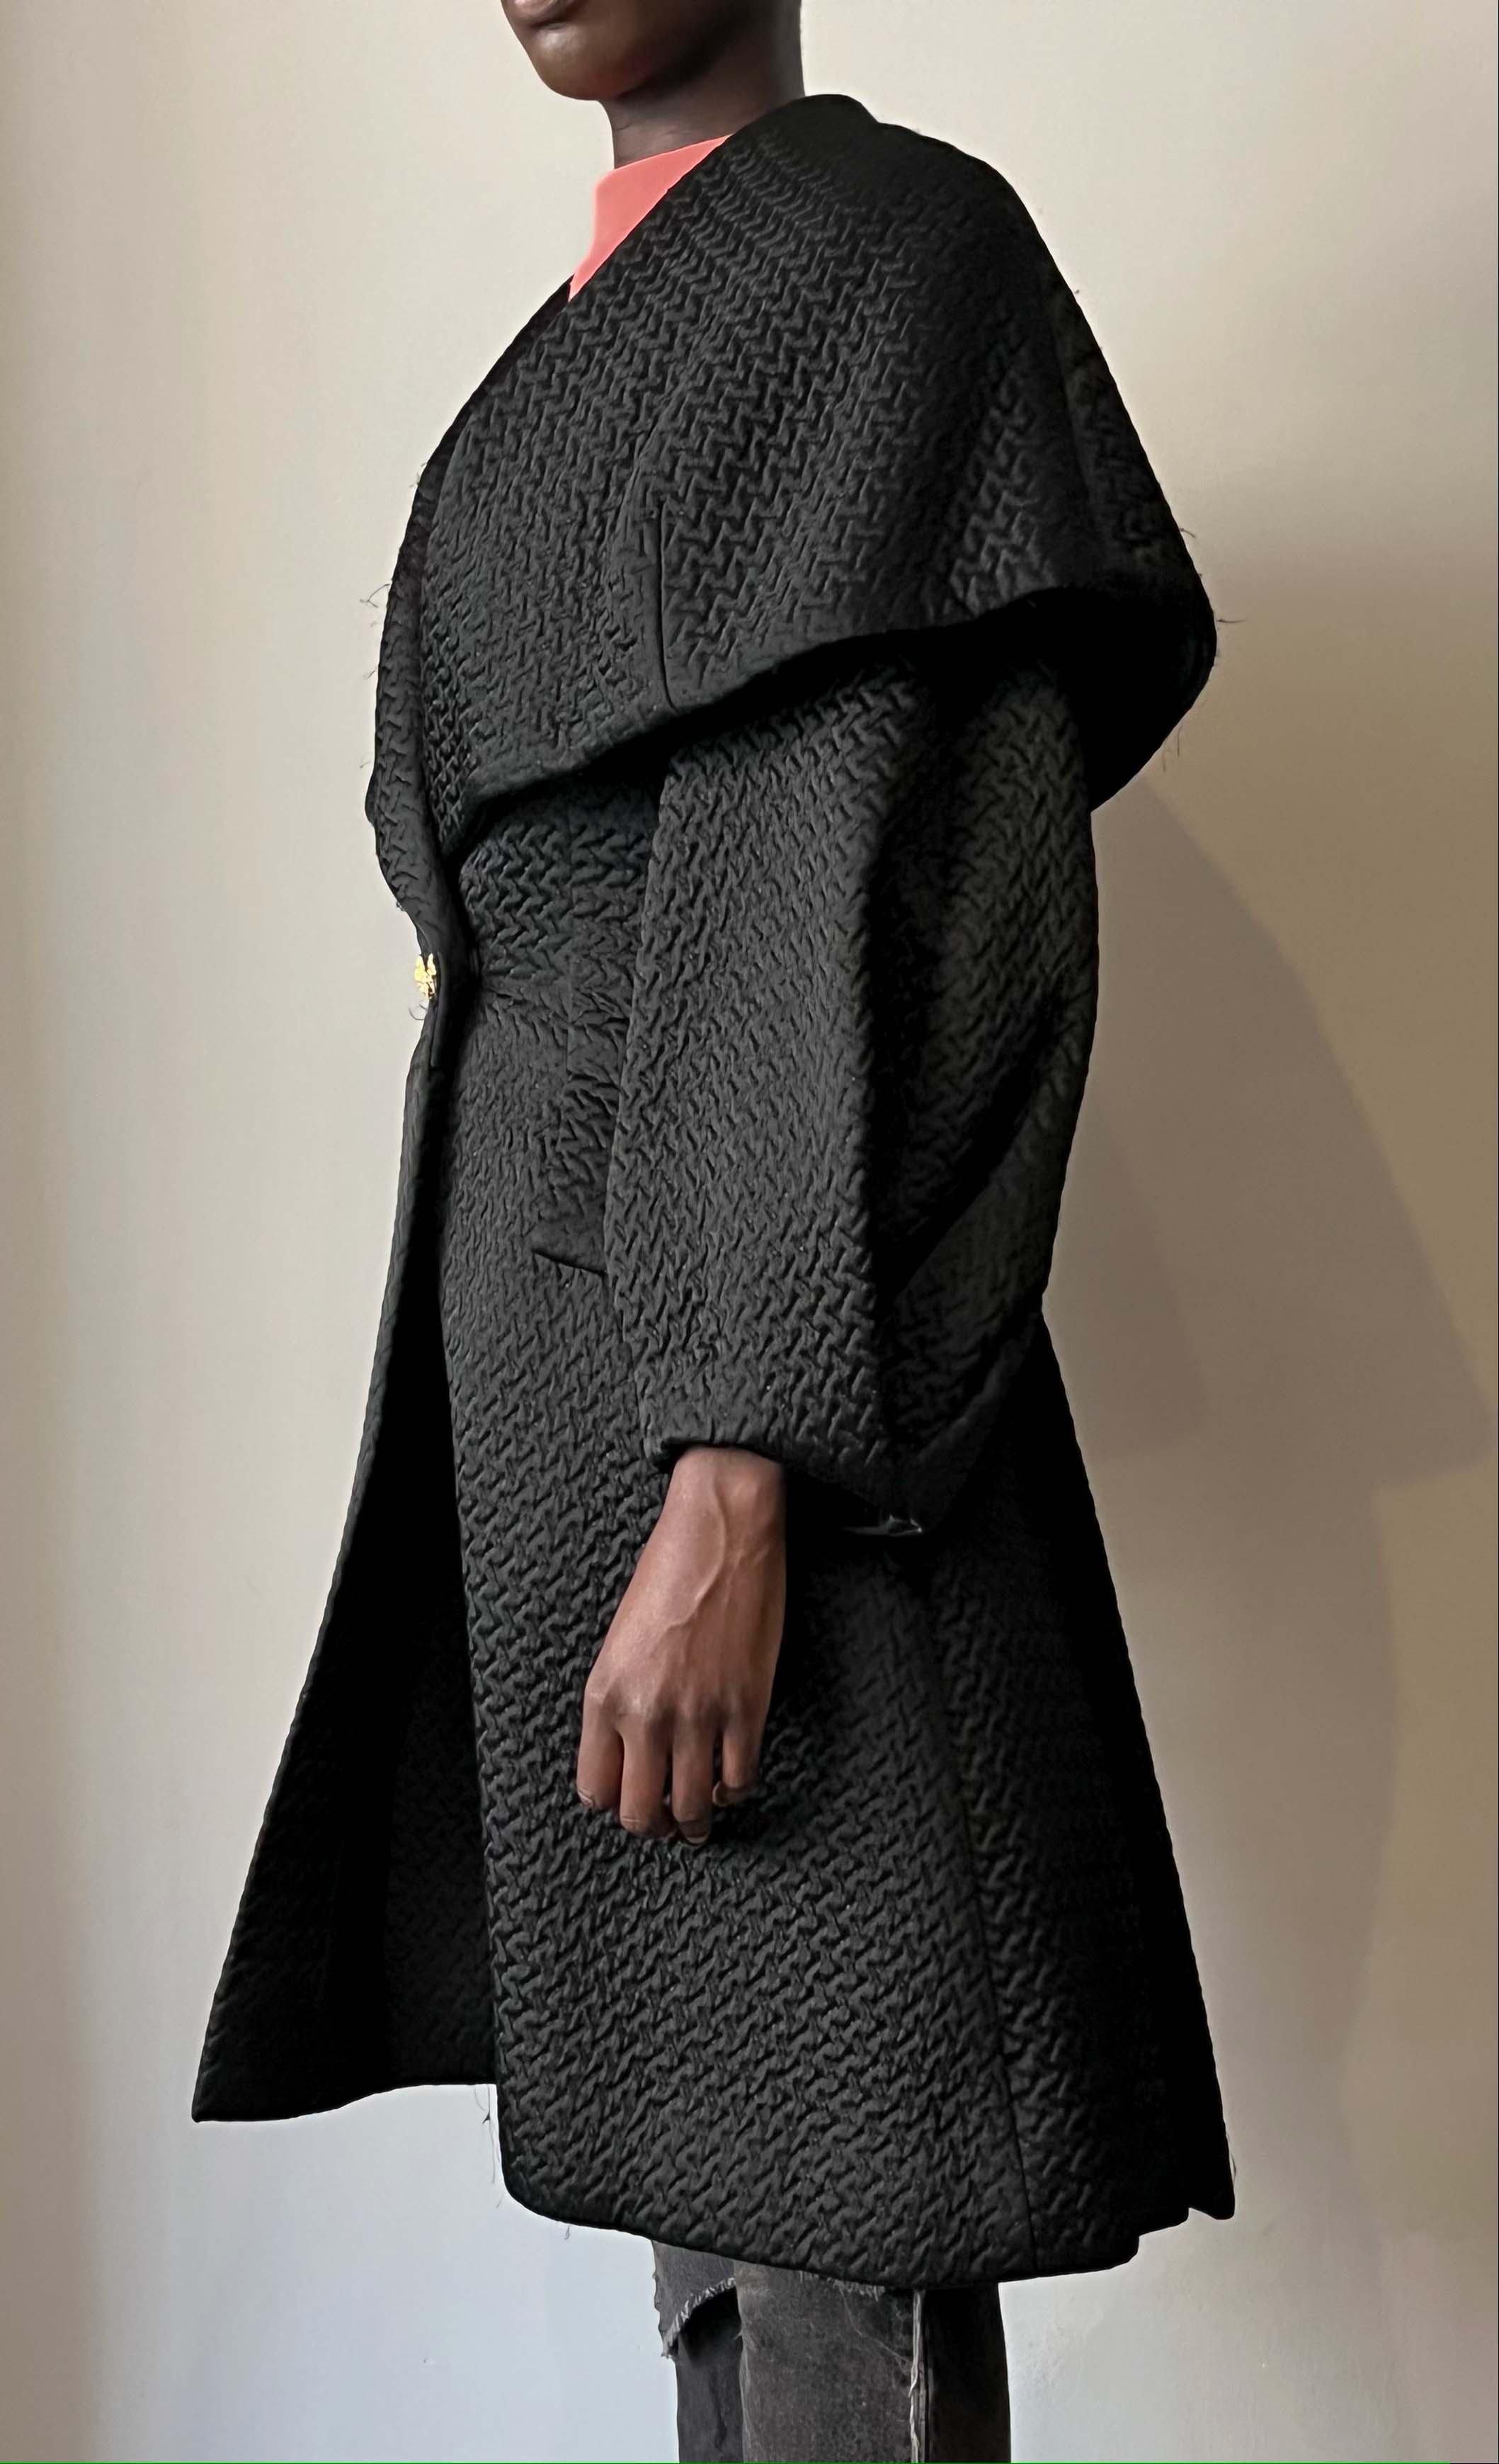 Christian Lacroix demi-couture black wool-blend sculptural coat